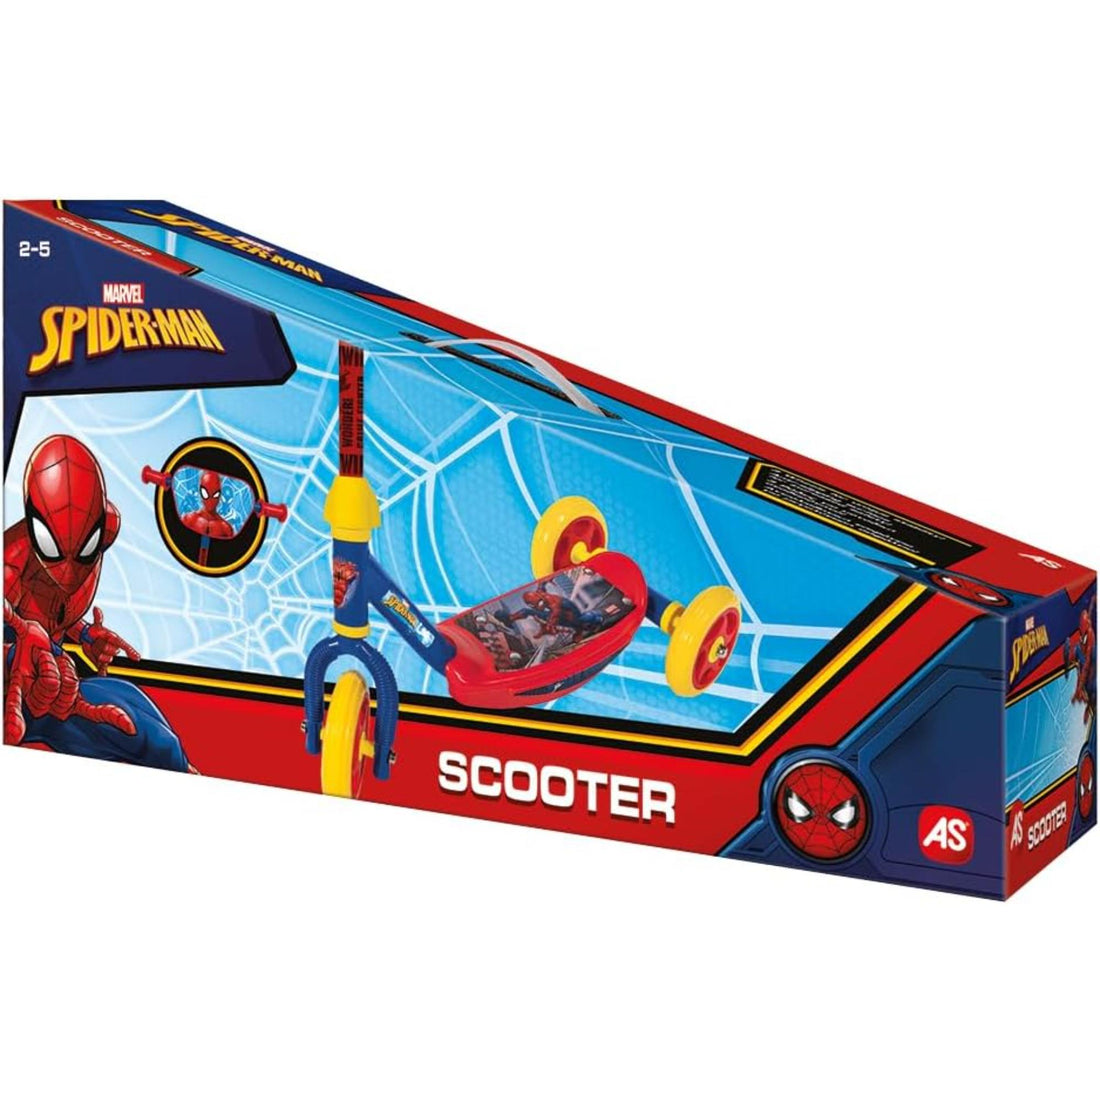 3-Wheel Scooter - Spider-Man